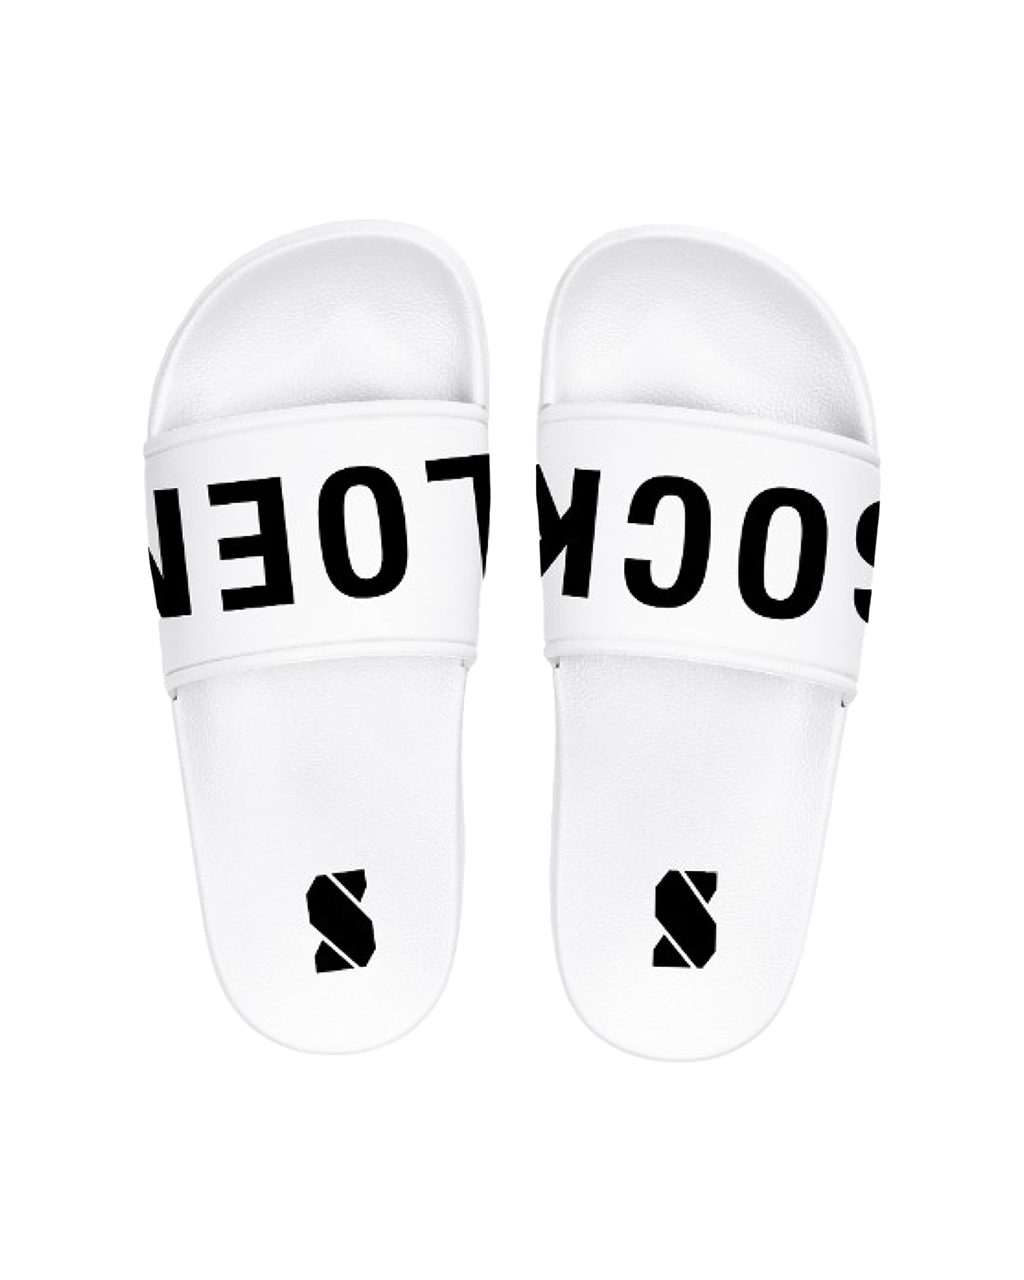 white-podium-slipper-accessoires-sockeloen